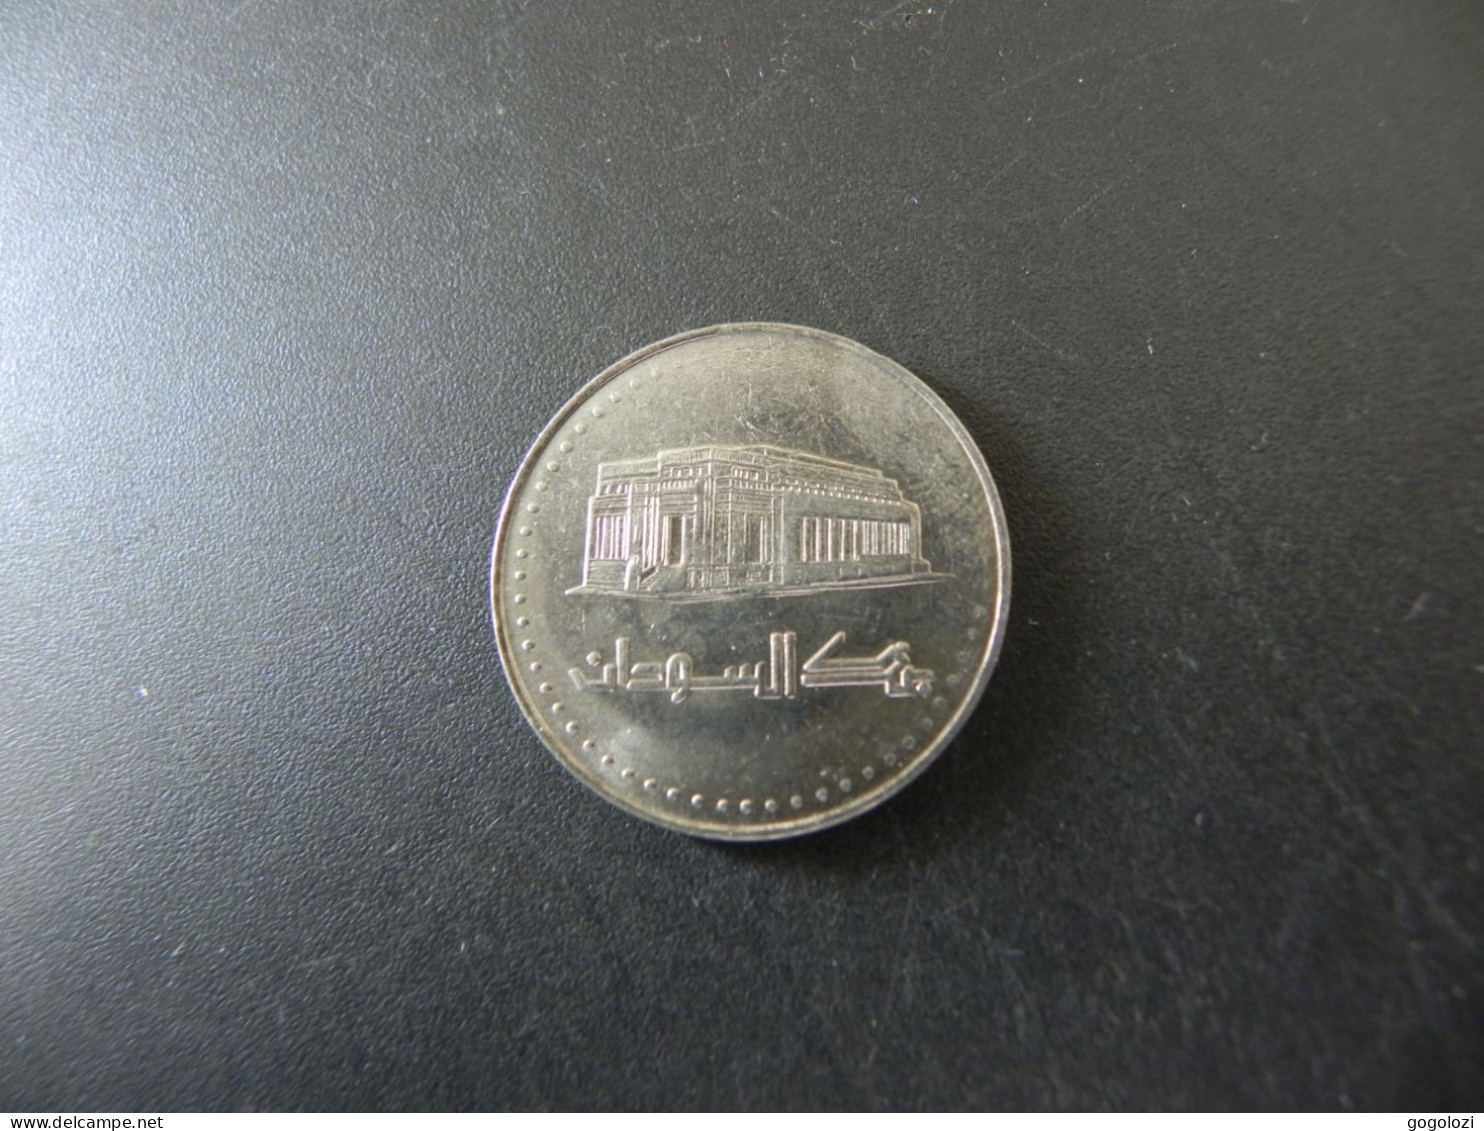 Sudan 50 Dinars 2002 - Soudan